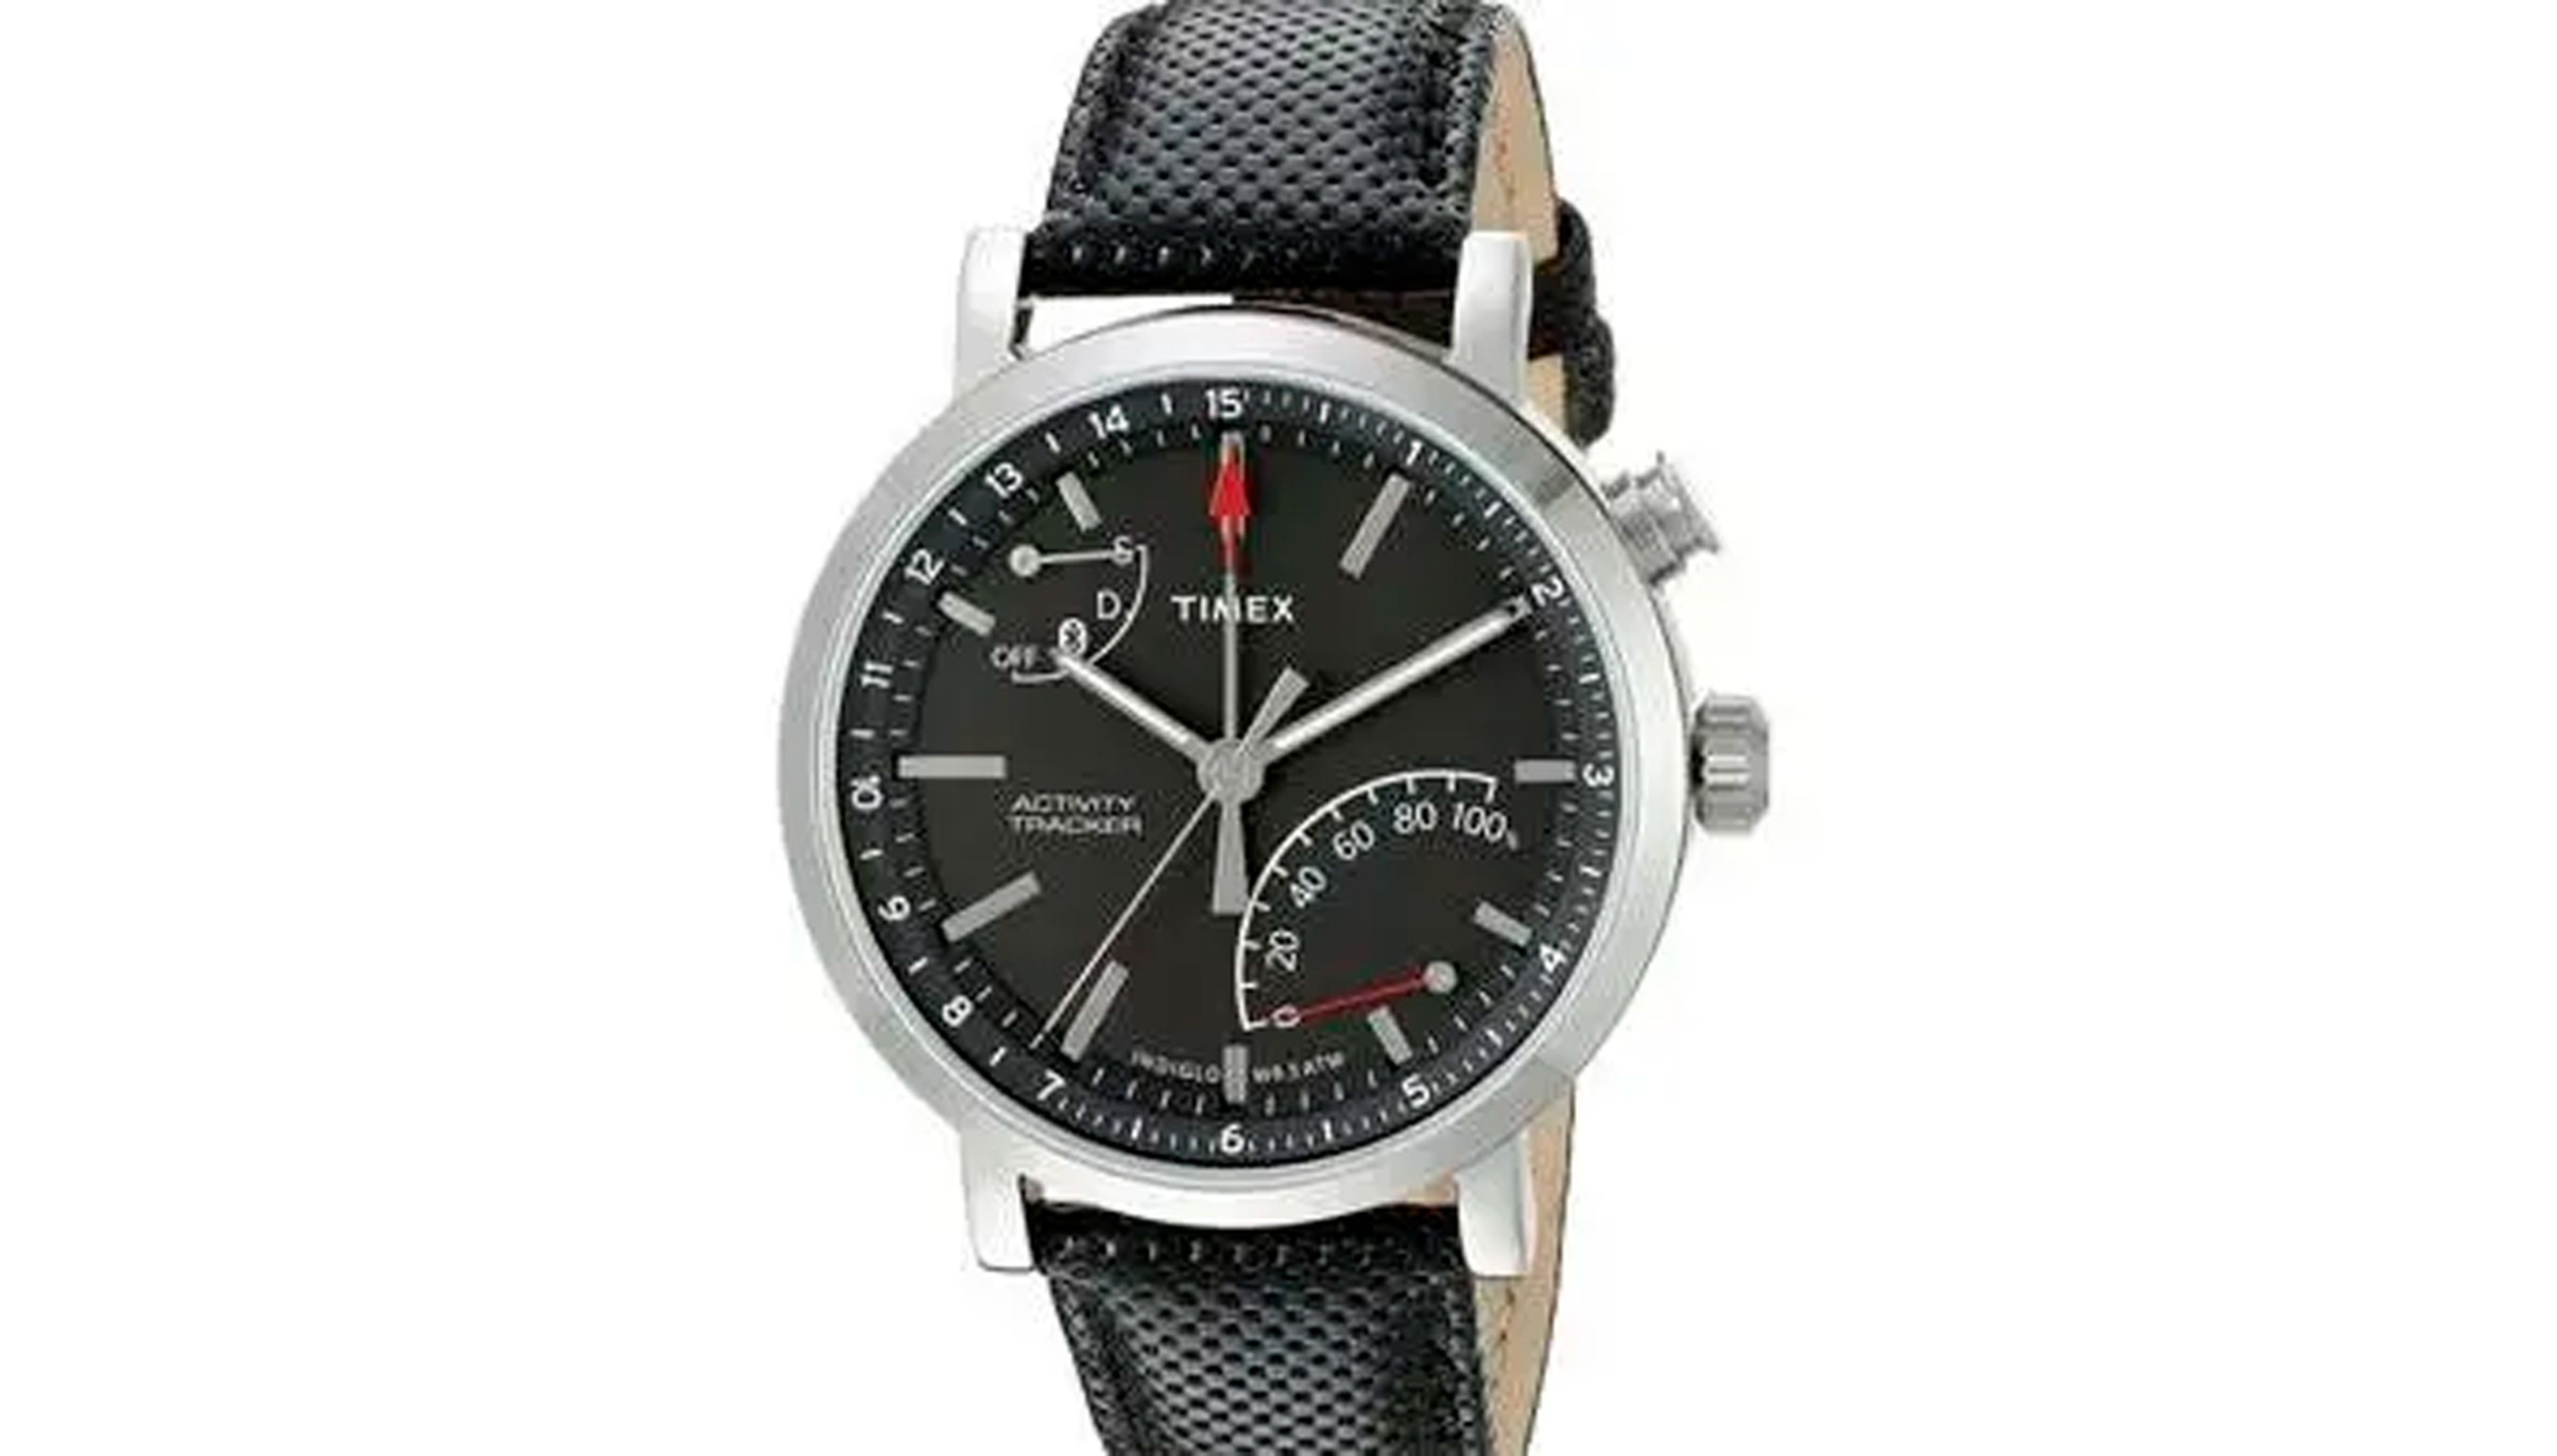 Los relojes Timex son una opción sencilla pero popular en Silicon Valley. El Metropolitan+ Activity Tracker Smart Watch cuesta 199 dólares en Amazon, es decir, 186 euros.